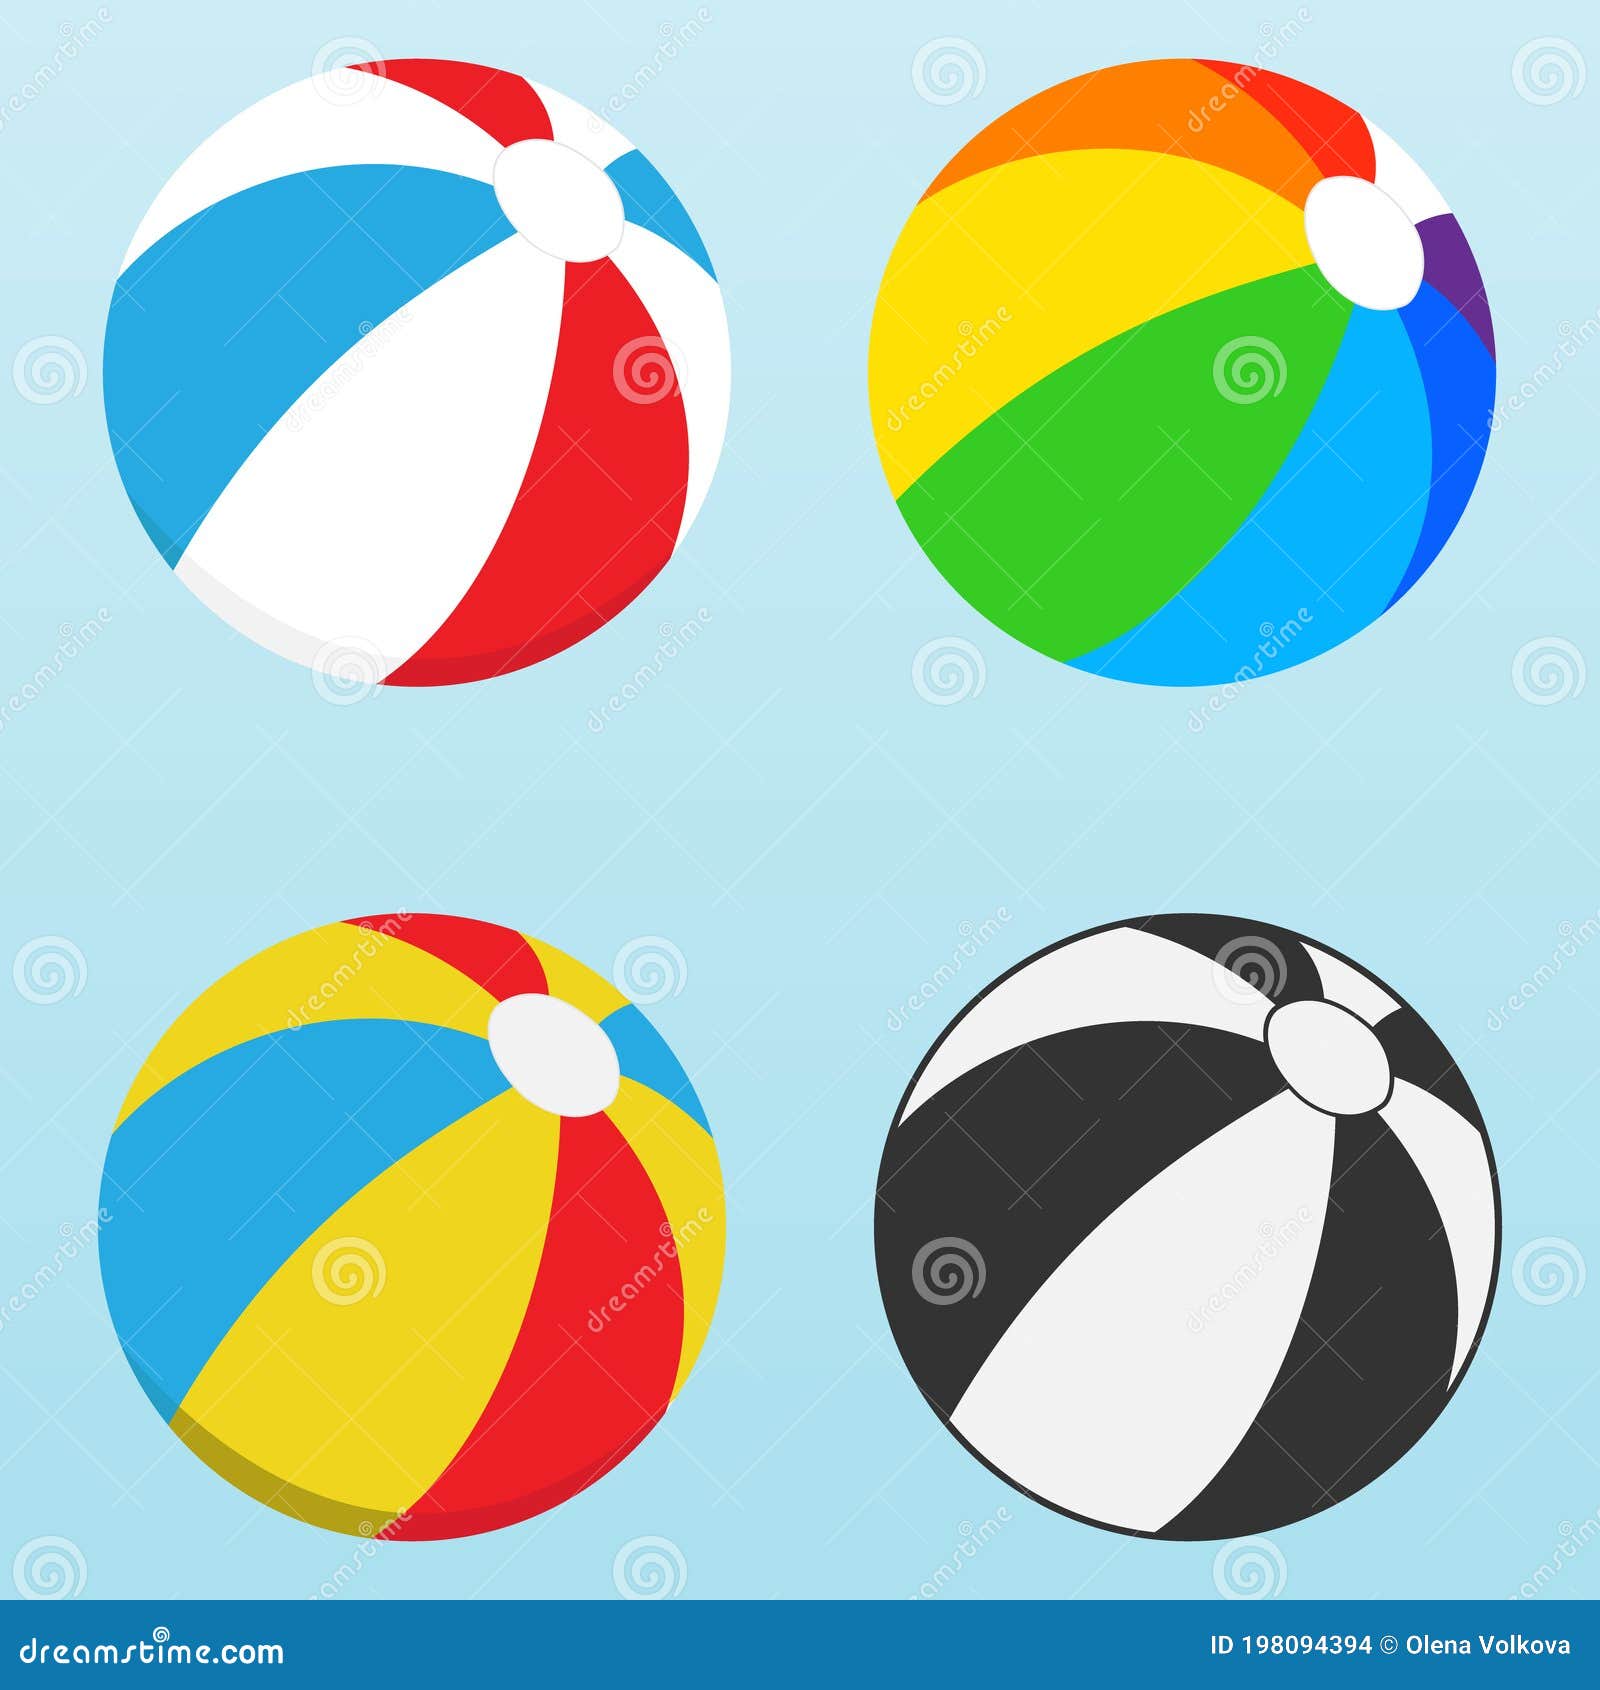 Balón De Playa, Juego De Bolas De Playa De Colores Vector, Ilustración De  Dibujos Animados Stock de ilustración - Ilustración de divertido, colorido:  198094394